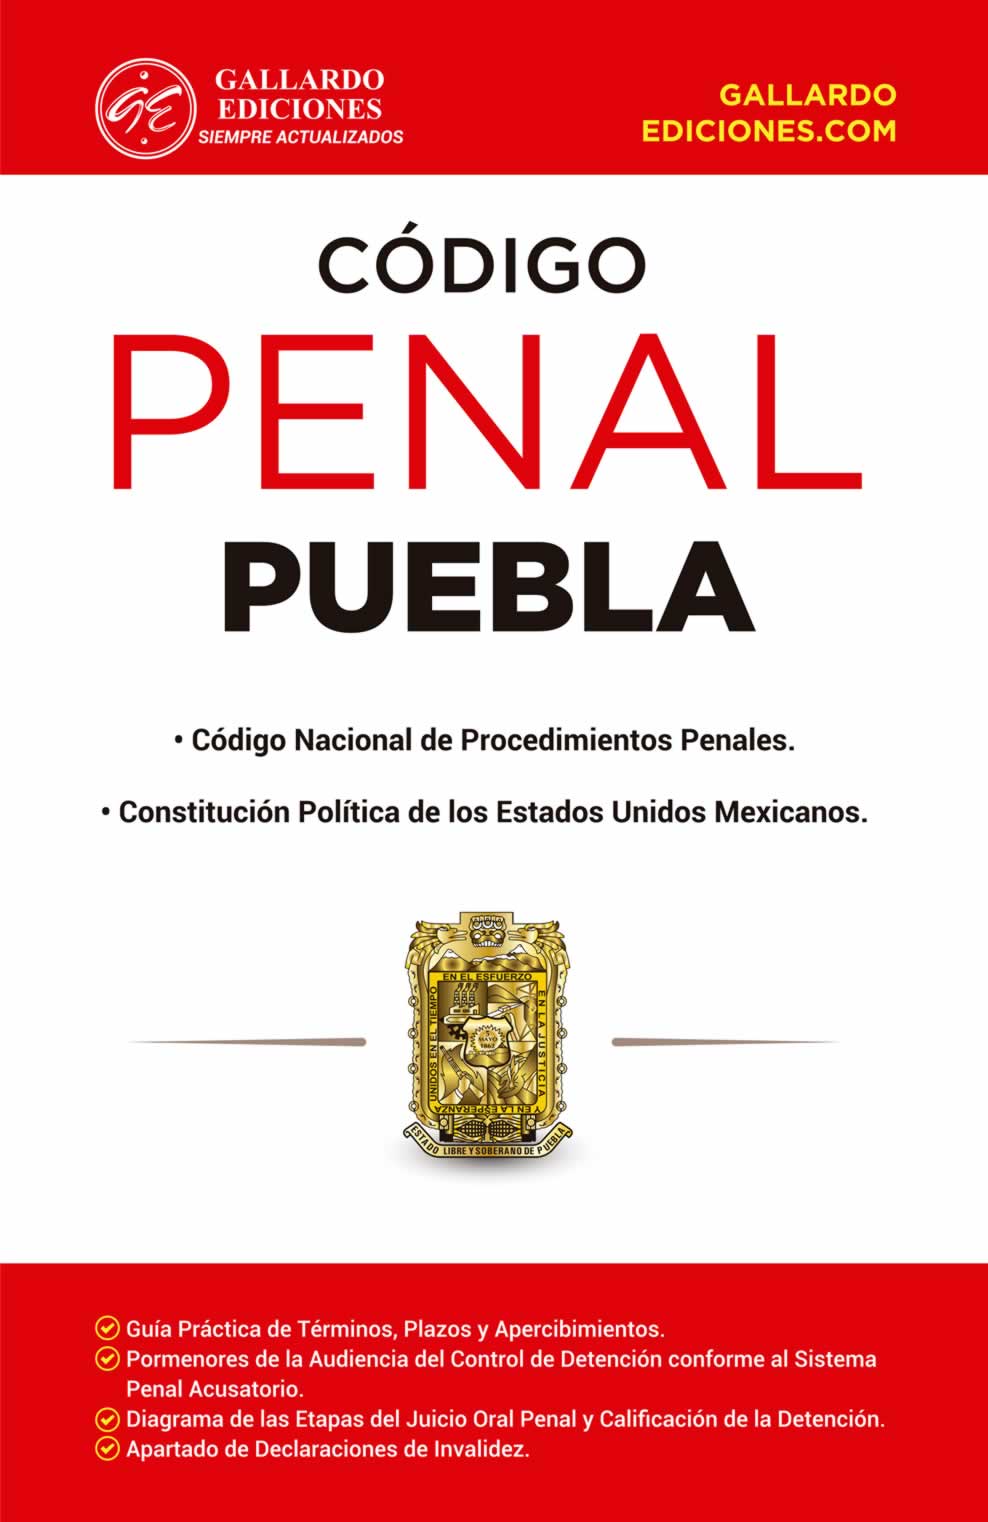 Código Penal del Estado de Puebla 2021 Gallardo Ediciones